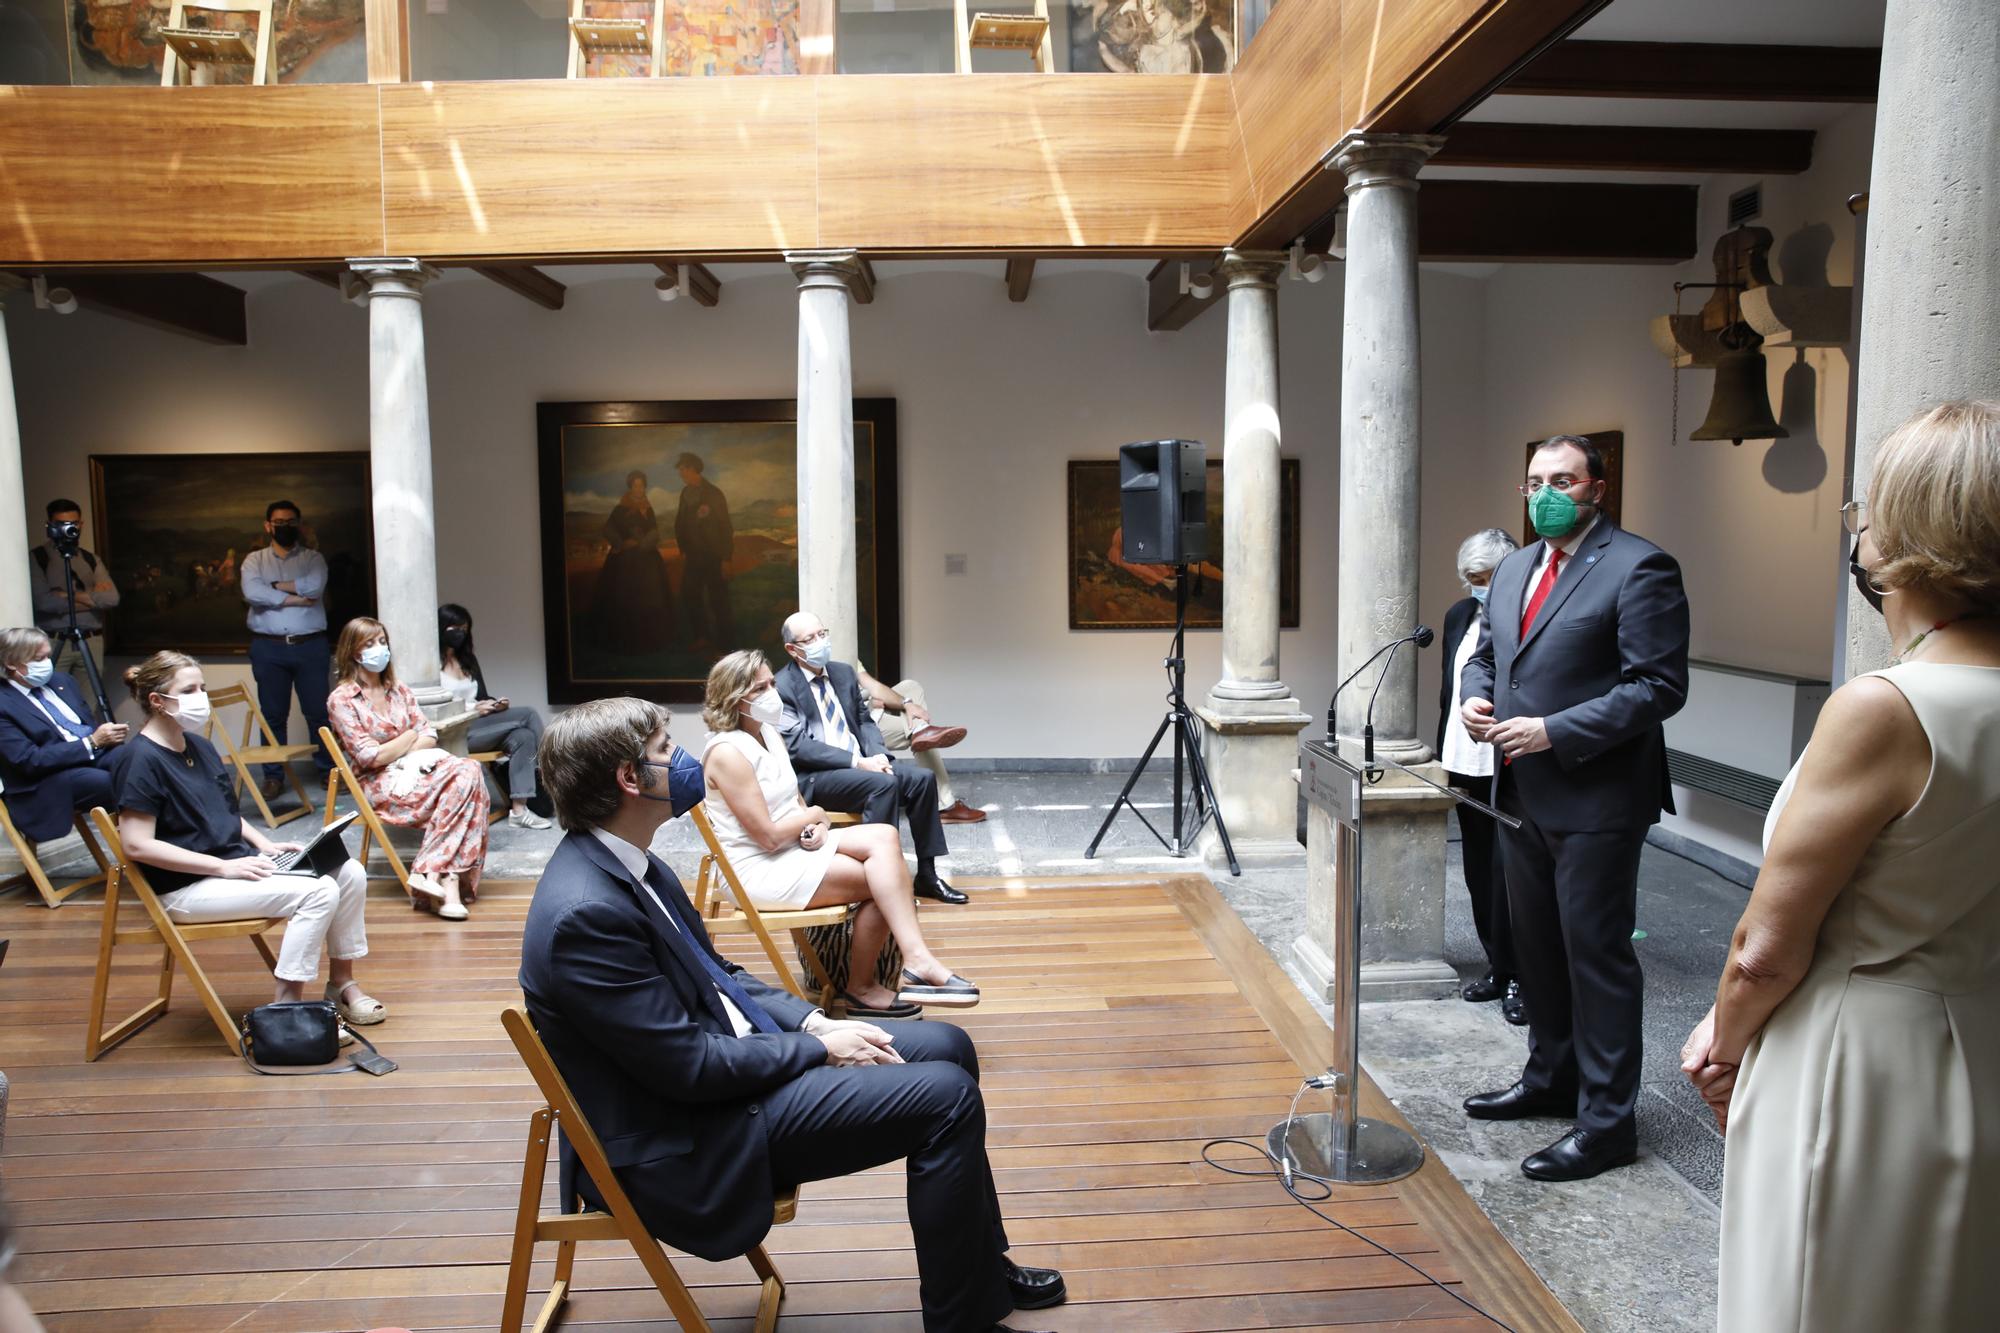 Inauguración de la exposición del retrato de Goya a Jovellanos en el arenal de San Lorenzo en la Casa Natal